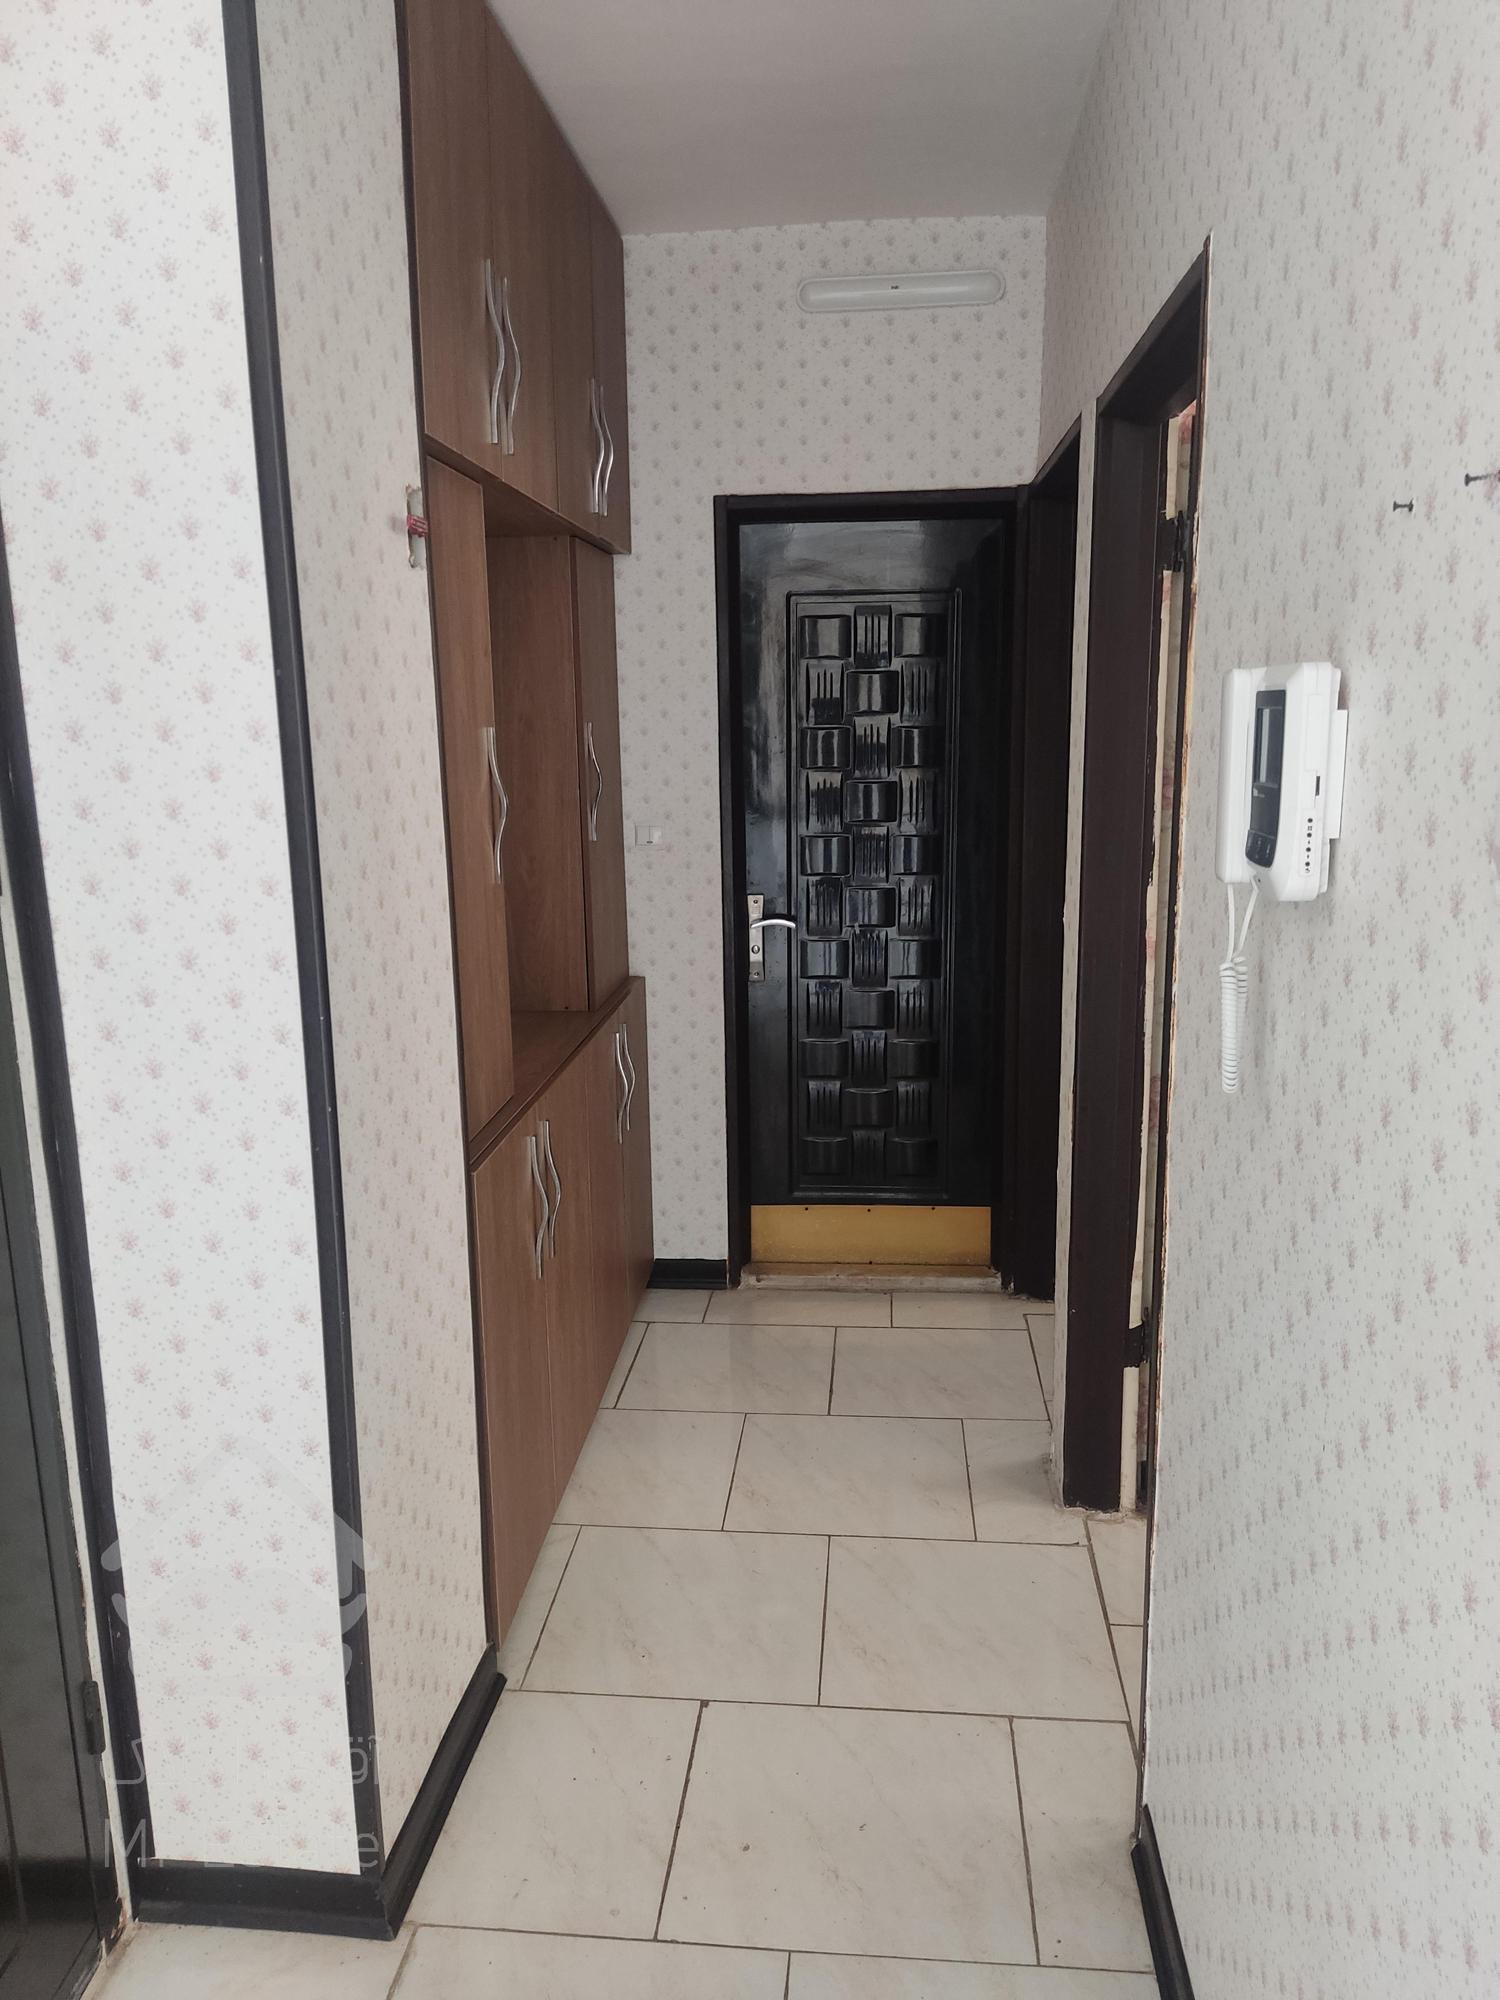 رهن کامل آپارتمان در شهرک سیمرغ اصفهان